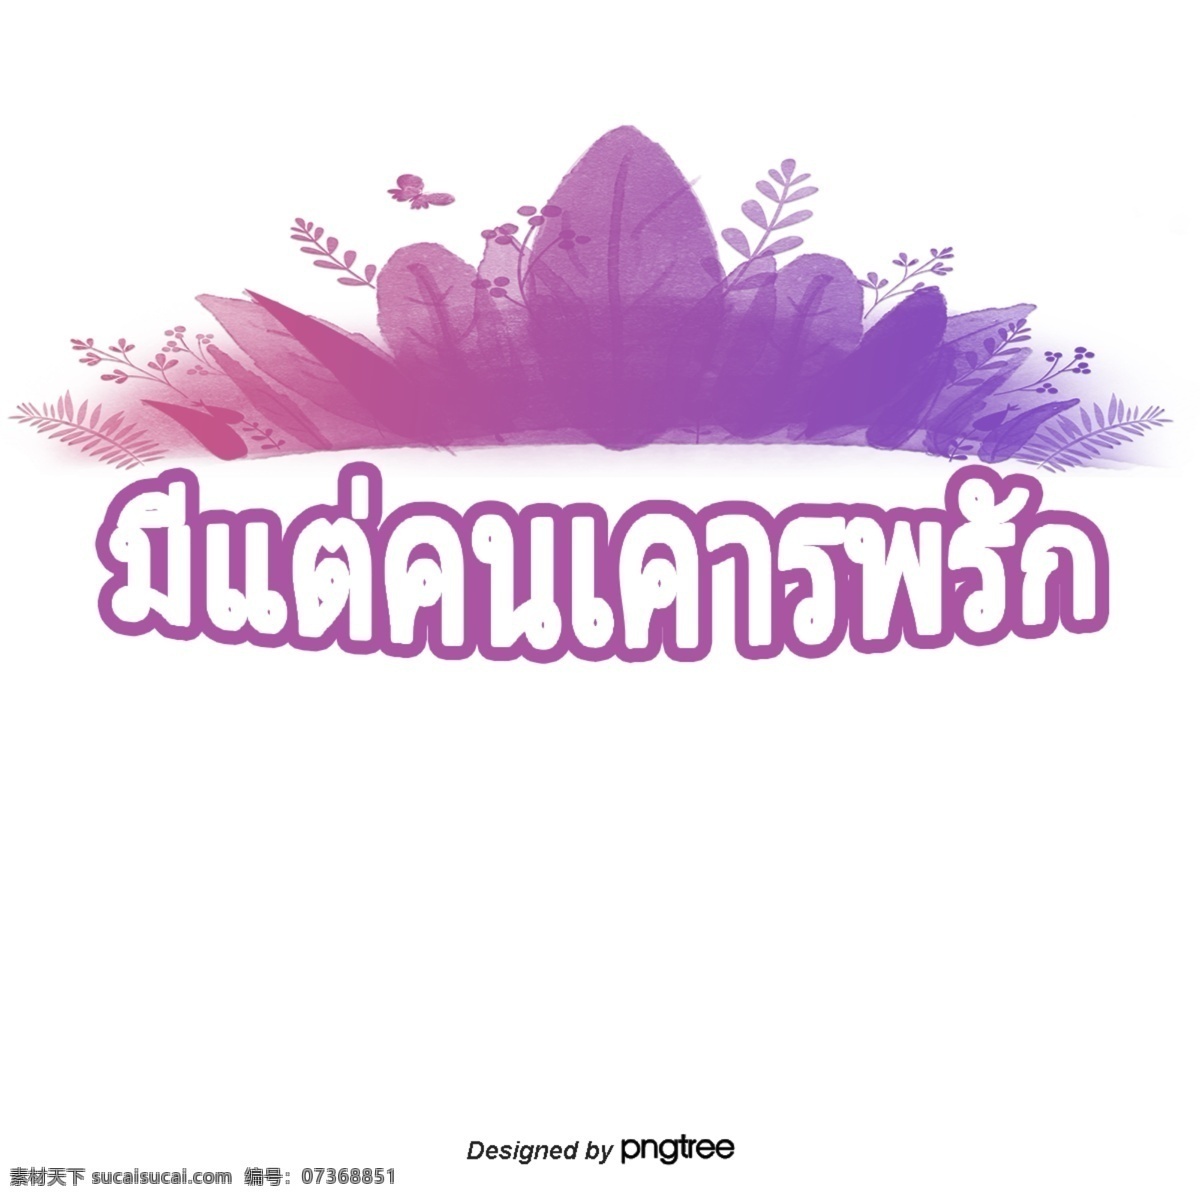 泰国人 喜欢 尊重 汉字 字体 紫色 鲜花 蹄 花 条纹